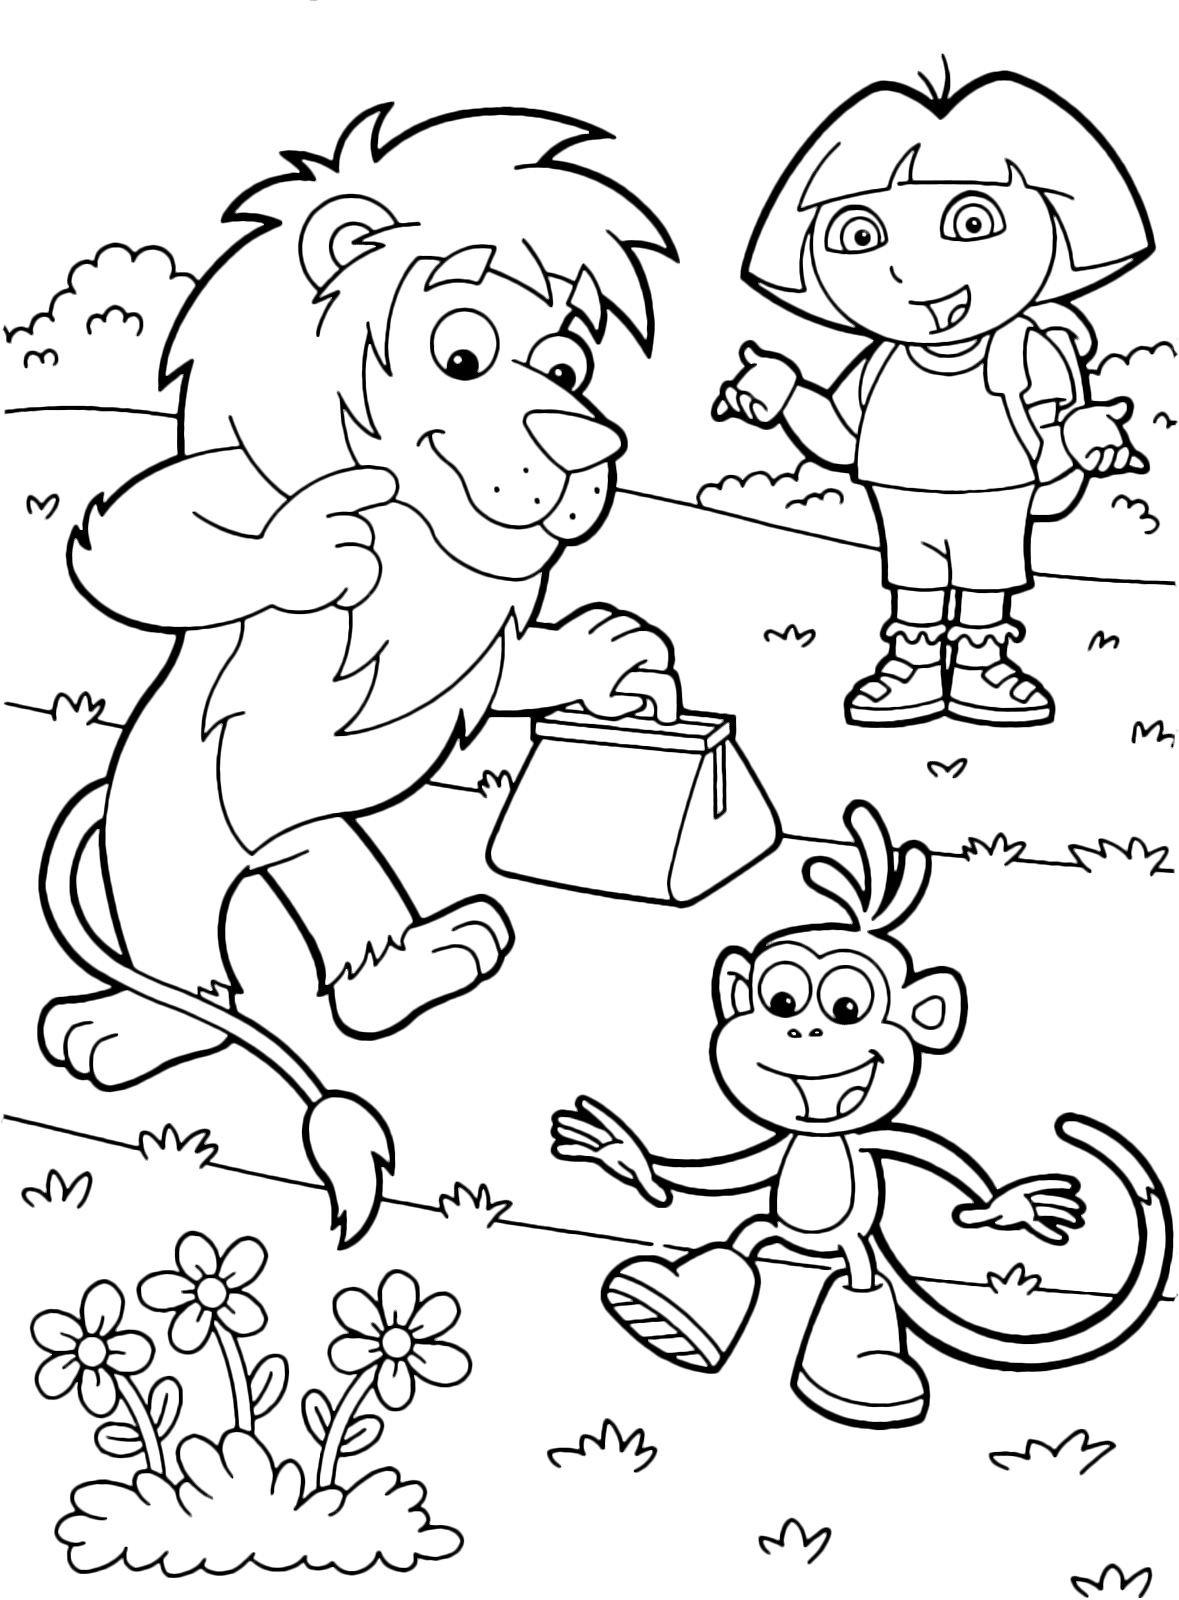 Dora l'esploratrice - Dora e Boots aiutano il signor Leone che deve portare una valigetta